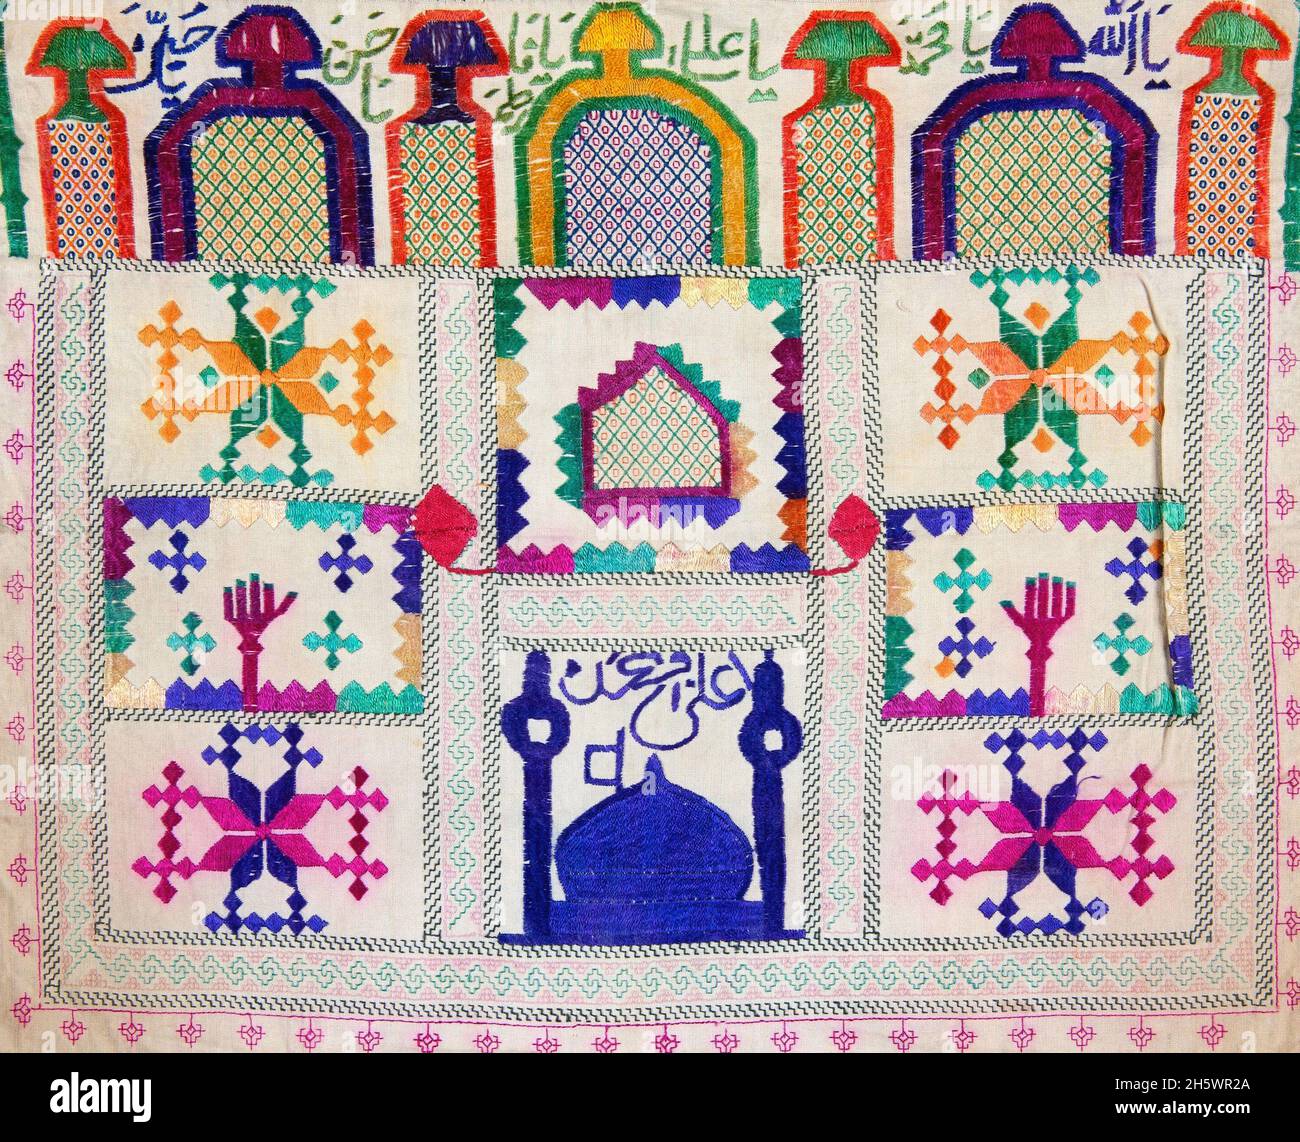 Détail de la toile de pierre de prière Hazara Afghanistan.Tissus brodés avec minaret; mosquée; caractères arabes; motifs de niche de prière.Les toiles de pierre de prière sont utilisées pour tenir la pierre de prière (mohr ou turba) utilisée par les musulmans chiites.Les pierres de prière sont faites d'argile cuite de Karbala.Les pierres de prière sont gardées enveloppées dans les chiffons dans la maison ou sur le corps.Lors de la prière on met le tissu de pierre de prière sur le tapis de prière.Les chiffons et les pierres de prière sont placés sur le tapis de prière de telle manière que l'on touche la pierre avec le front lorsqu'on se plie pendant la prière. Banque D'Images